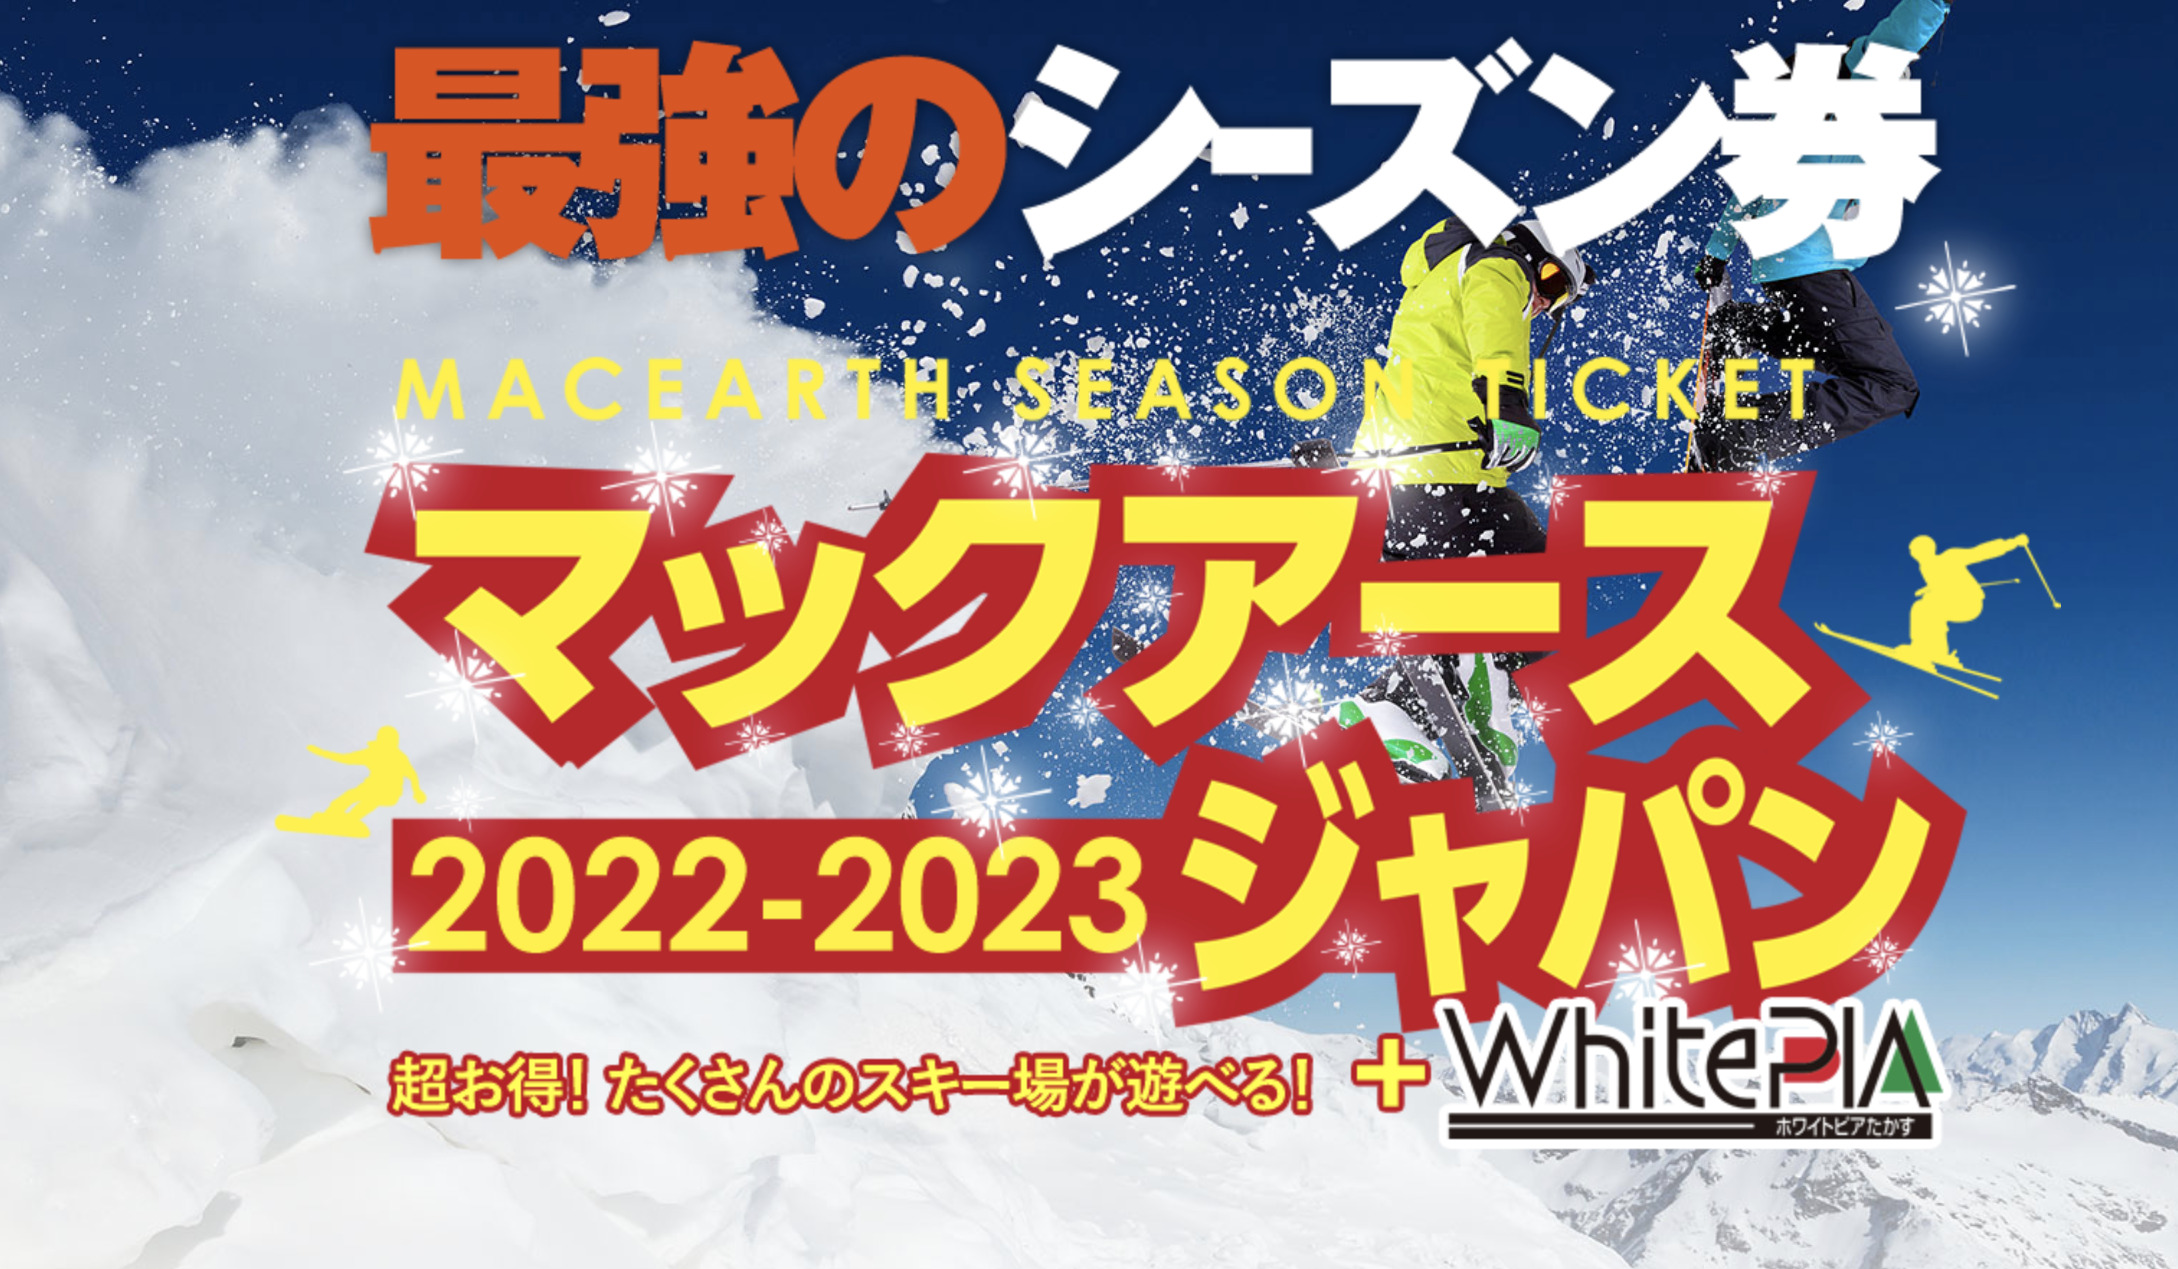 Mt.Naeba1日券2022-2023